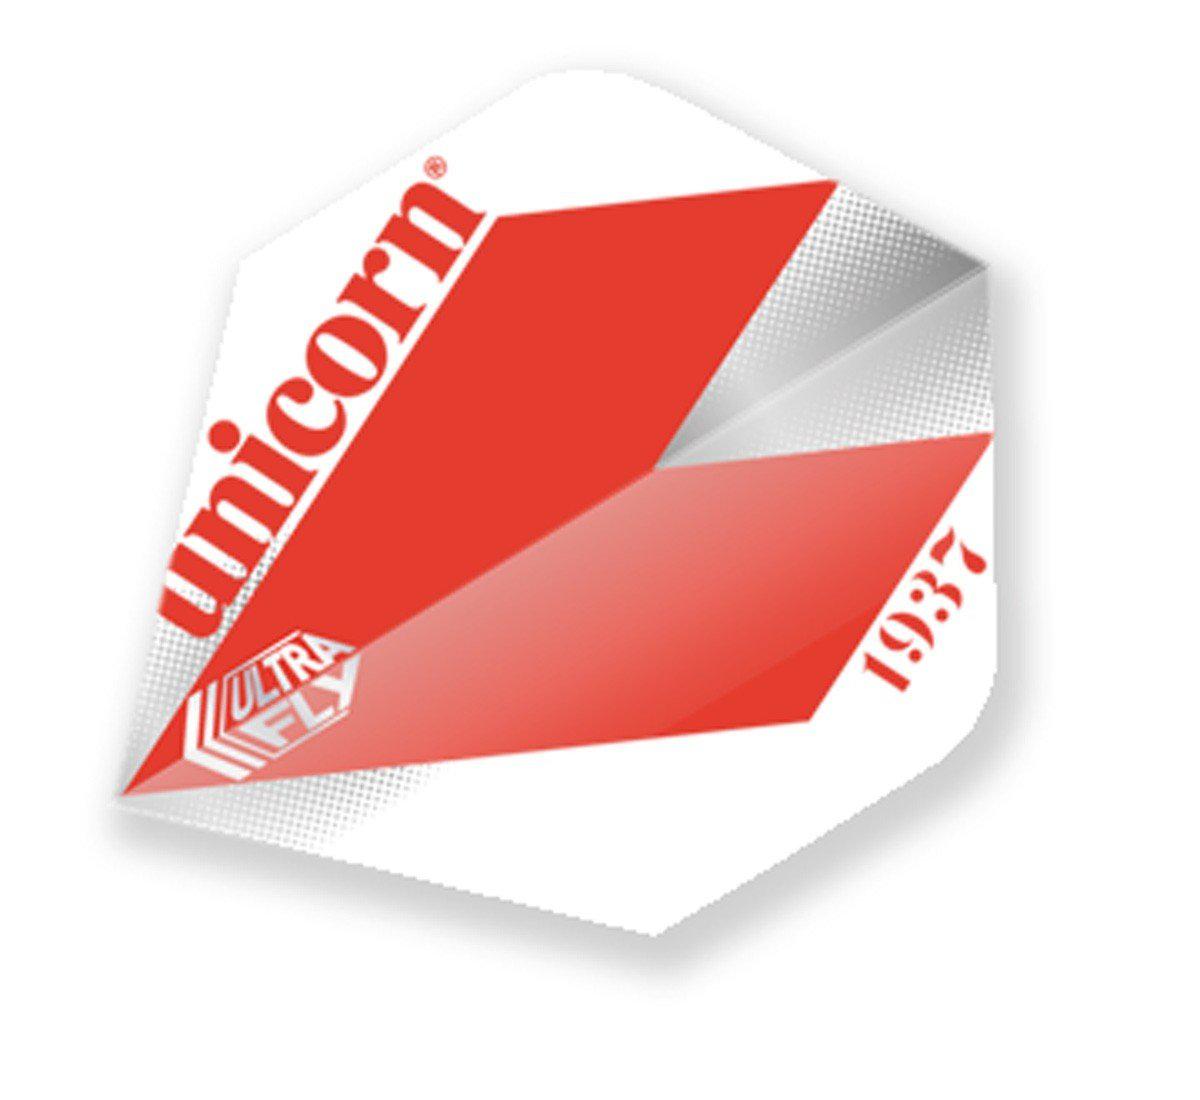 Unicorn Classic Big Wing Dart Flight - Comet Red-Dart Flights-Pro Sports